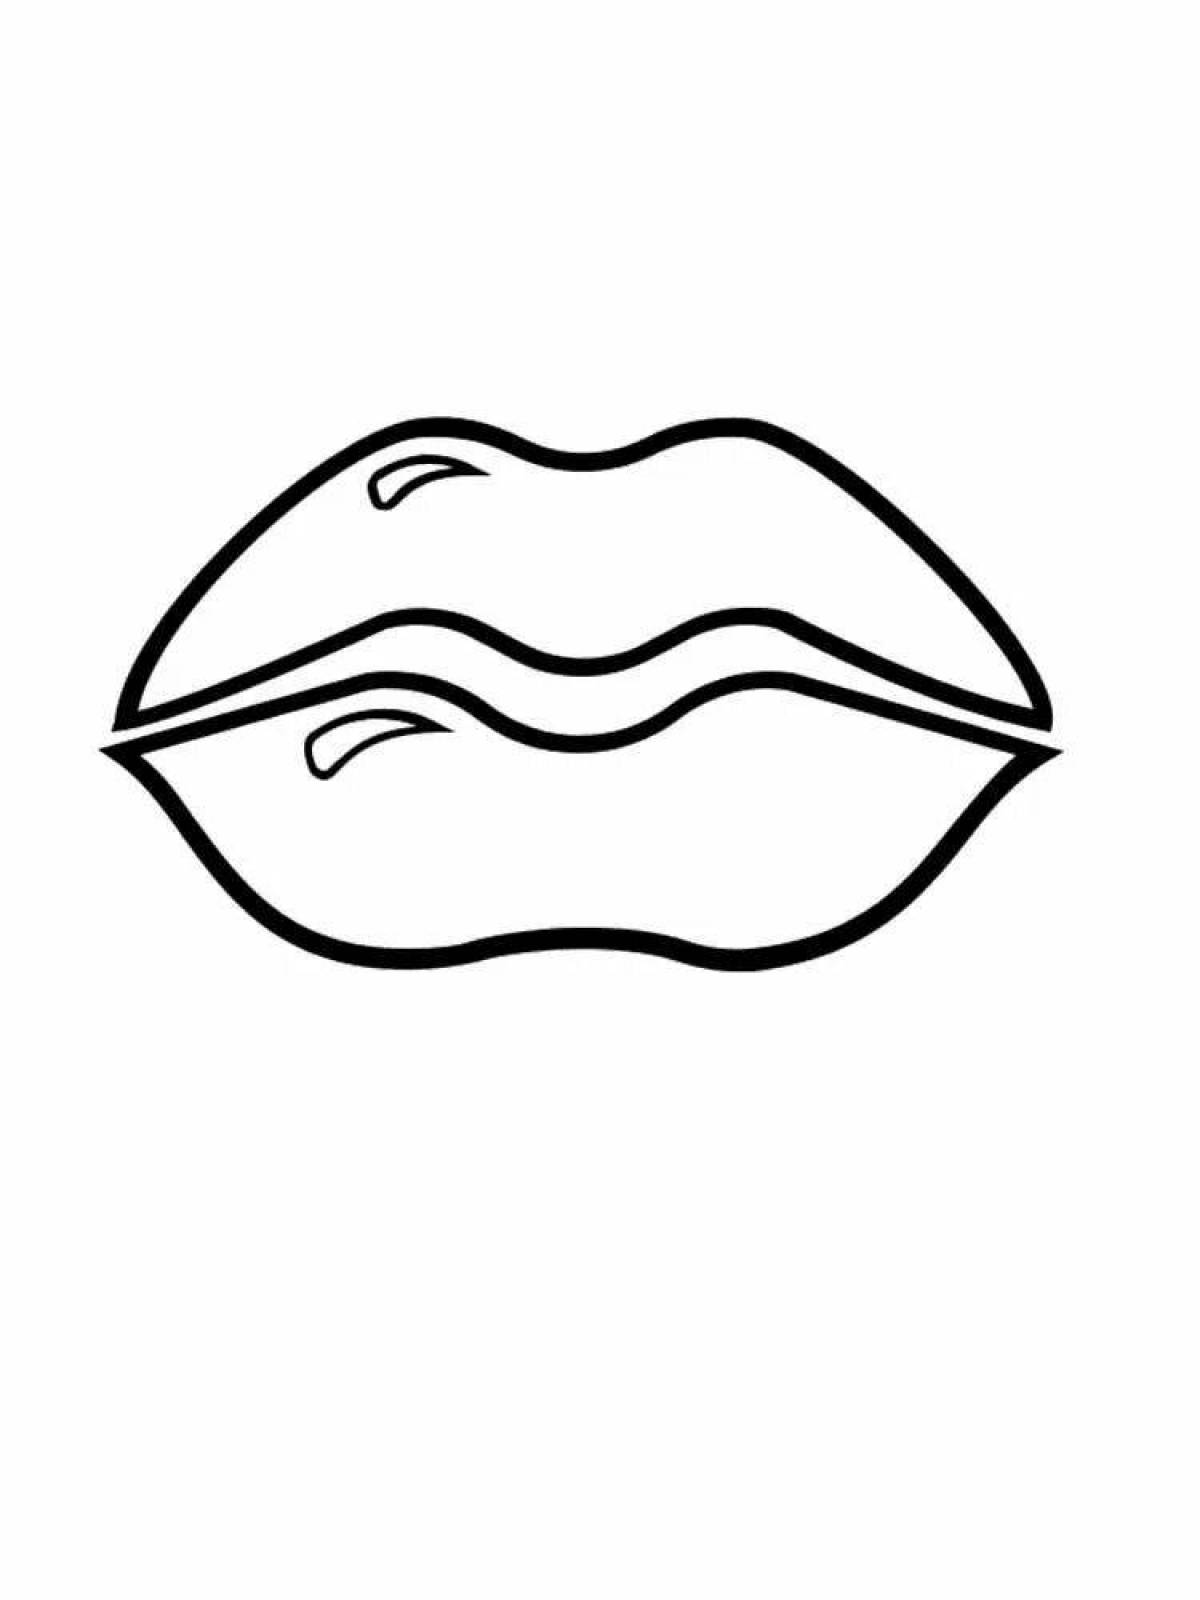 Glossy lip pattern